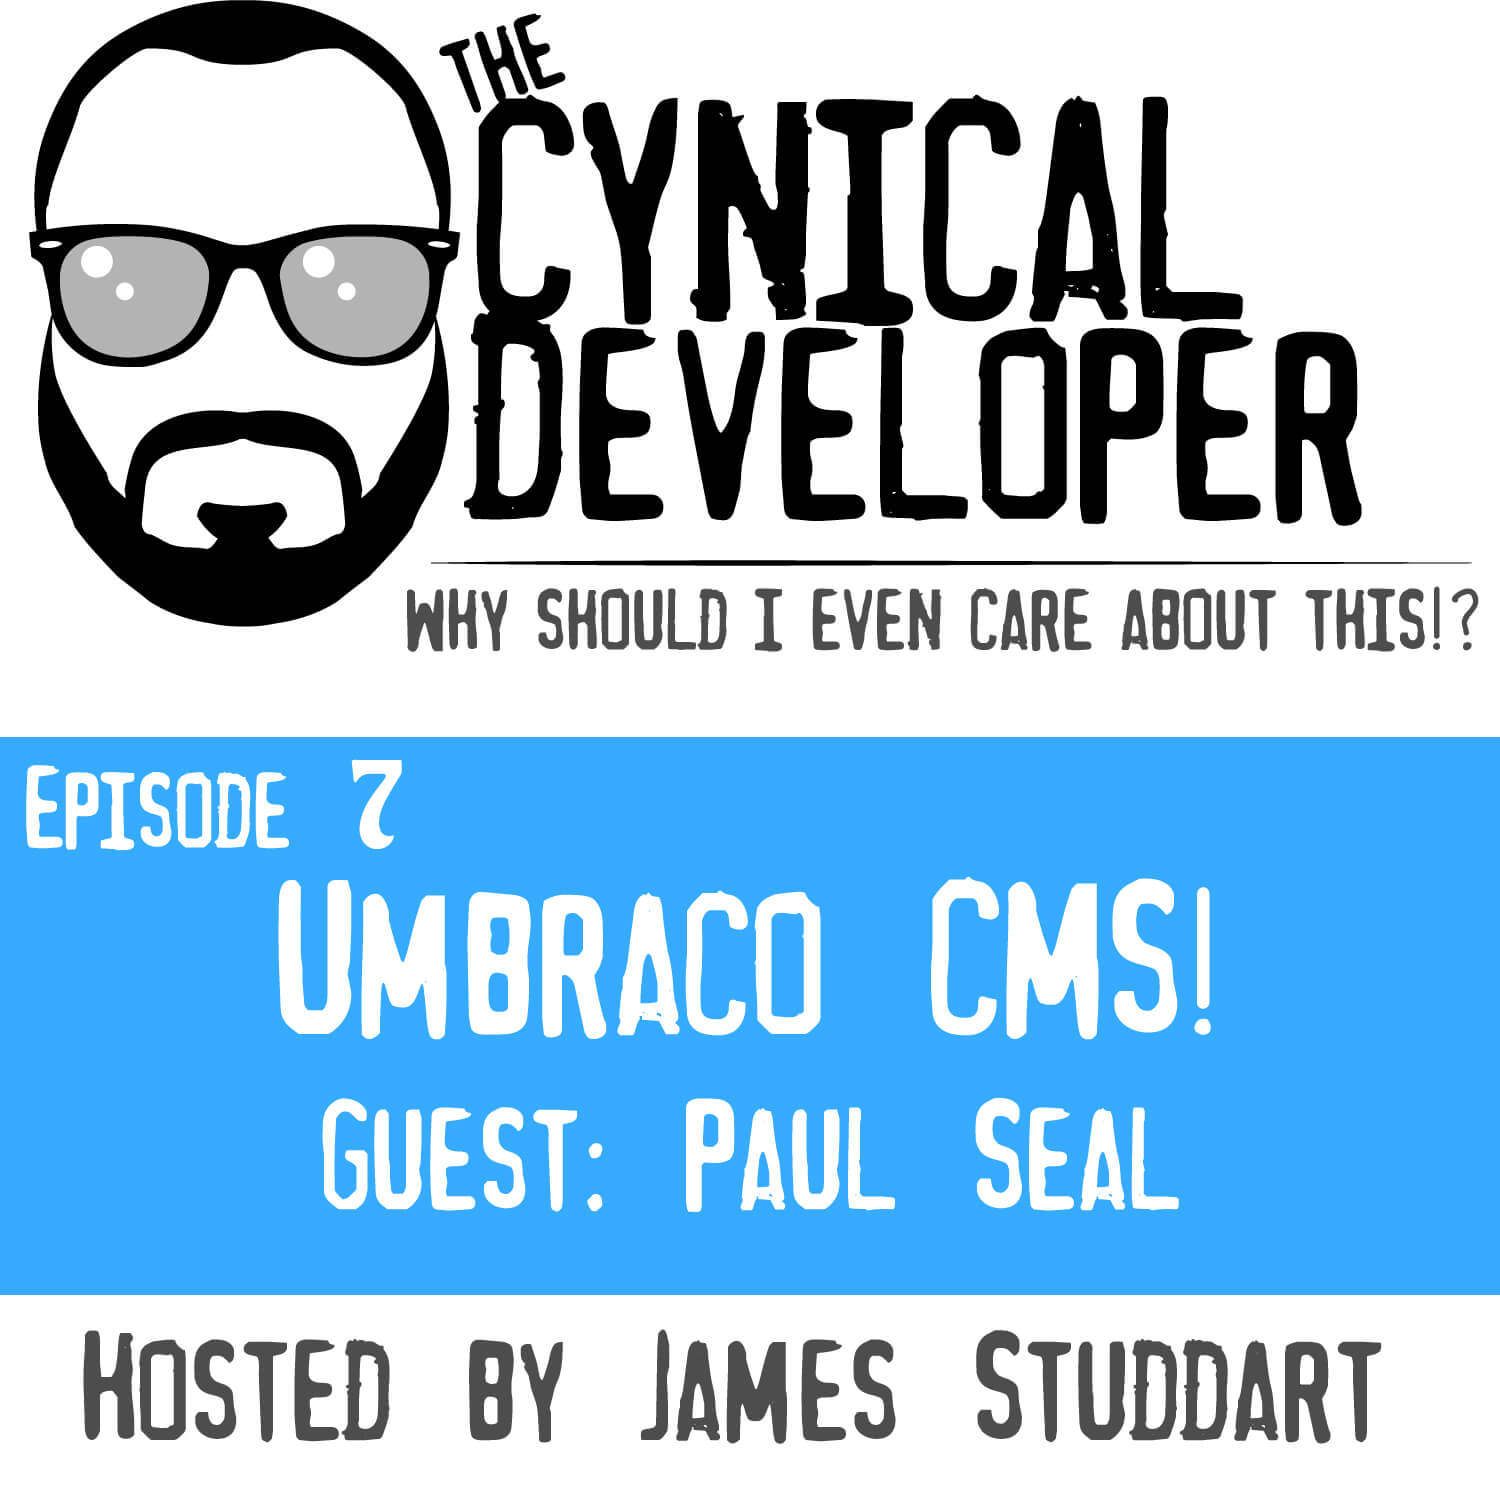 Episode 7 - Umbraco CMS!